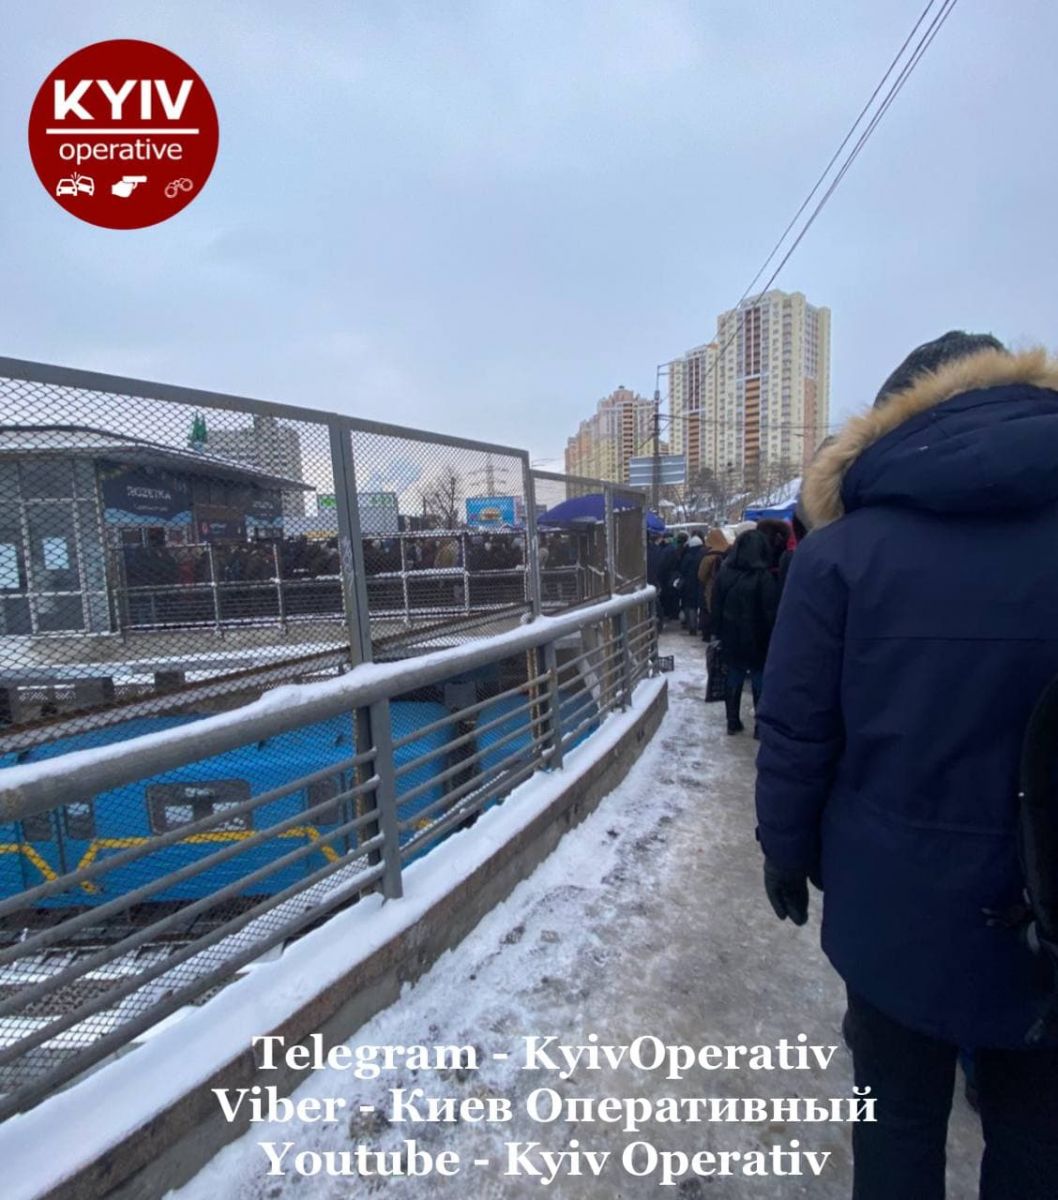 Вход на станцию метро "Черниговская" в Киеве 21 декабря